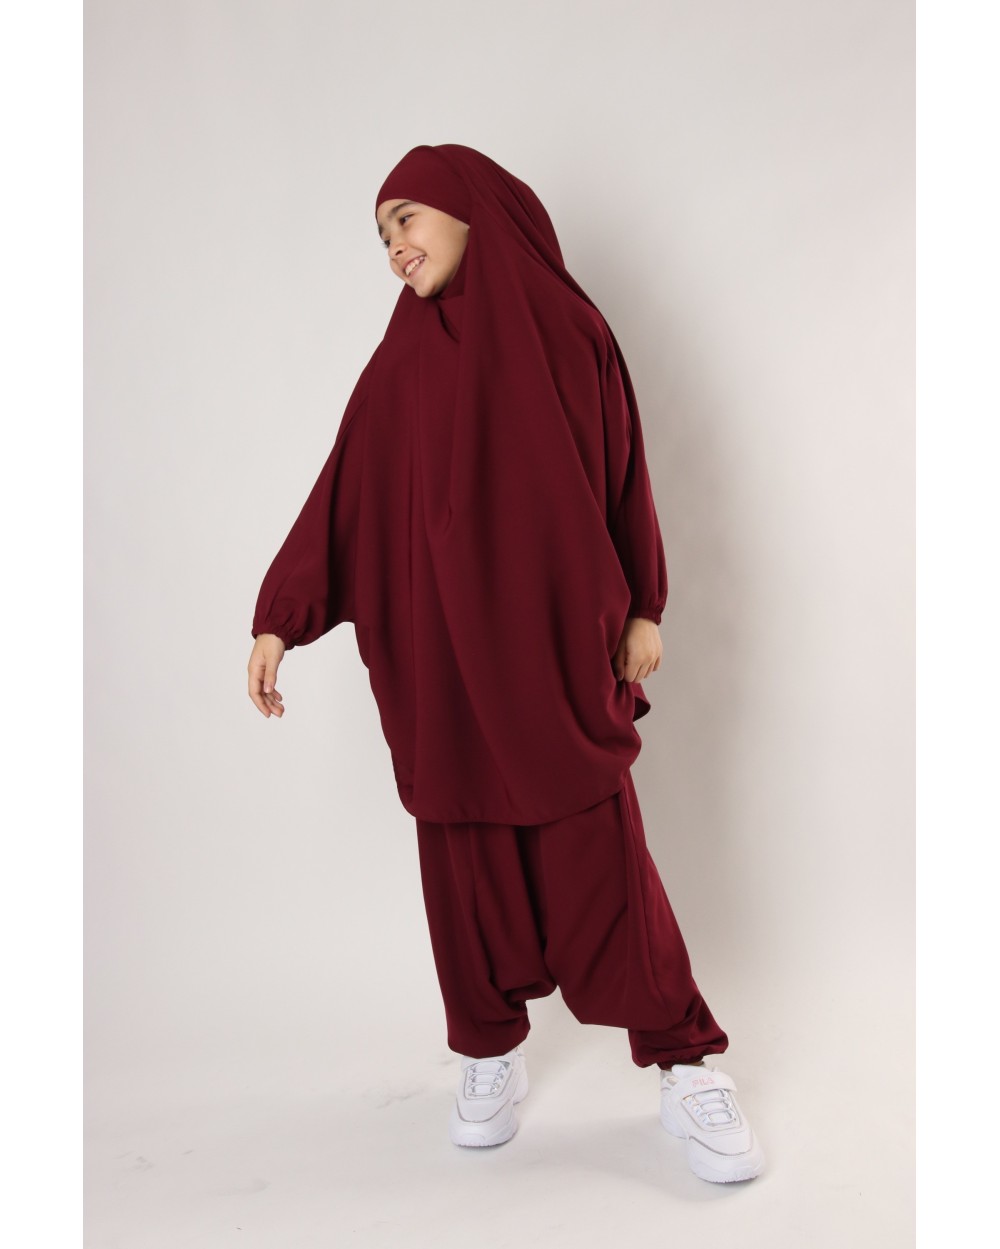 Jilbab child harem pants